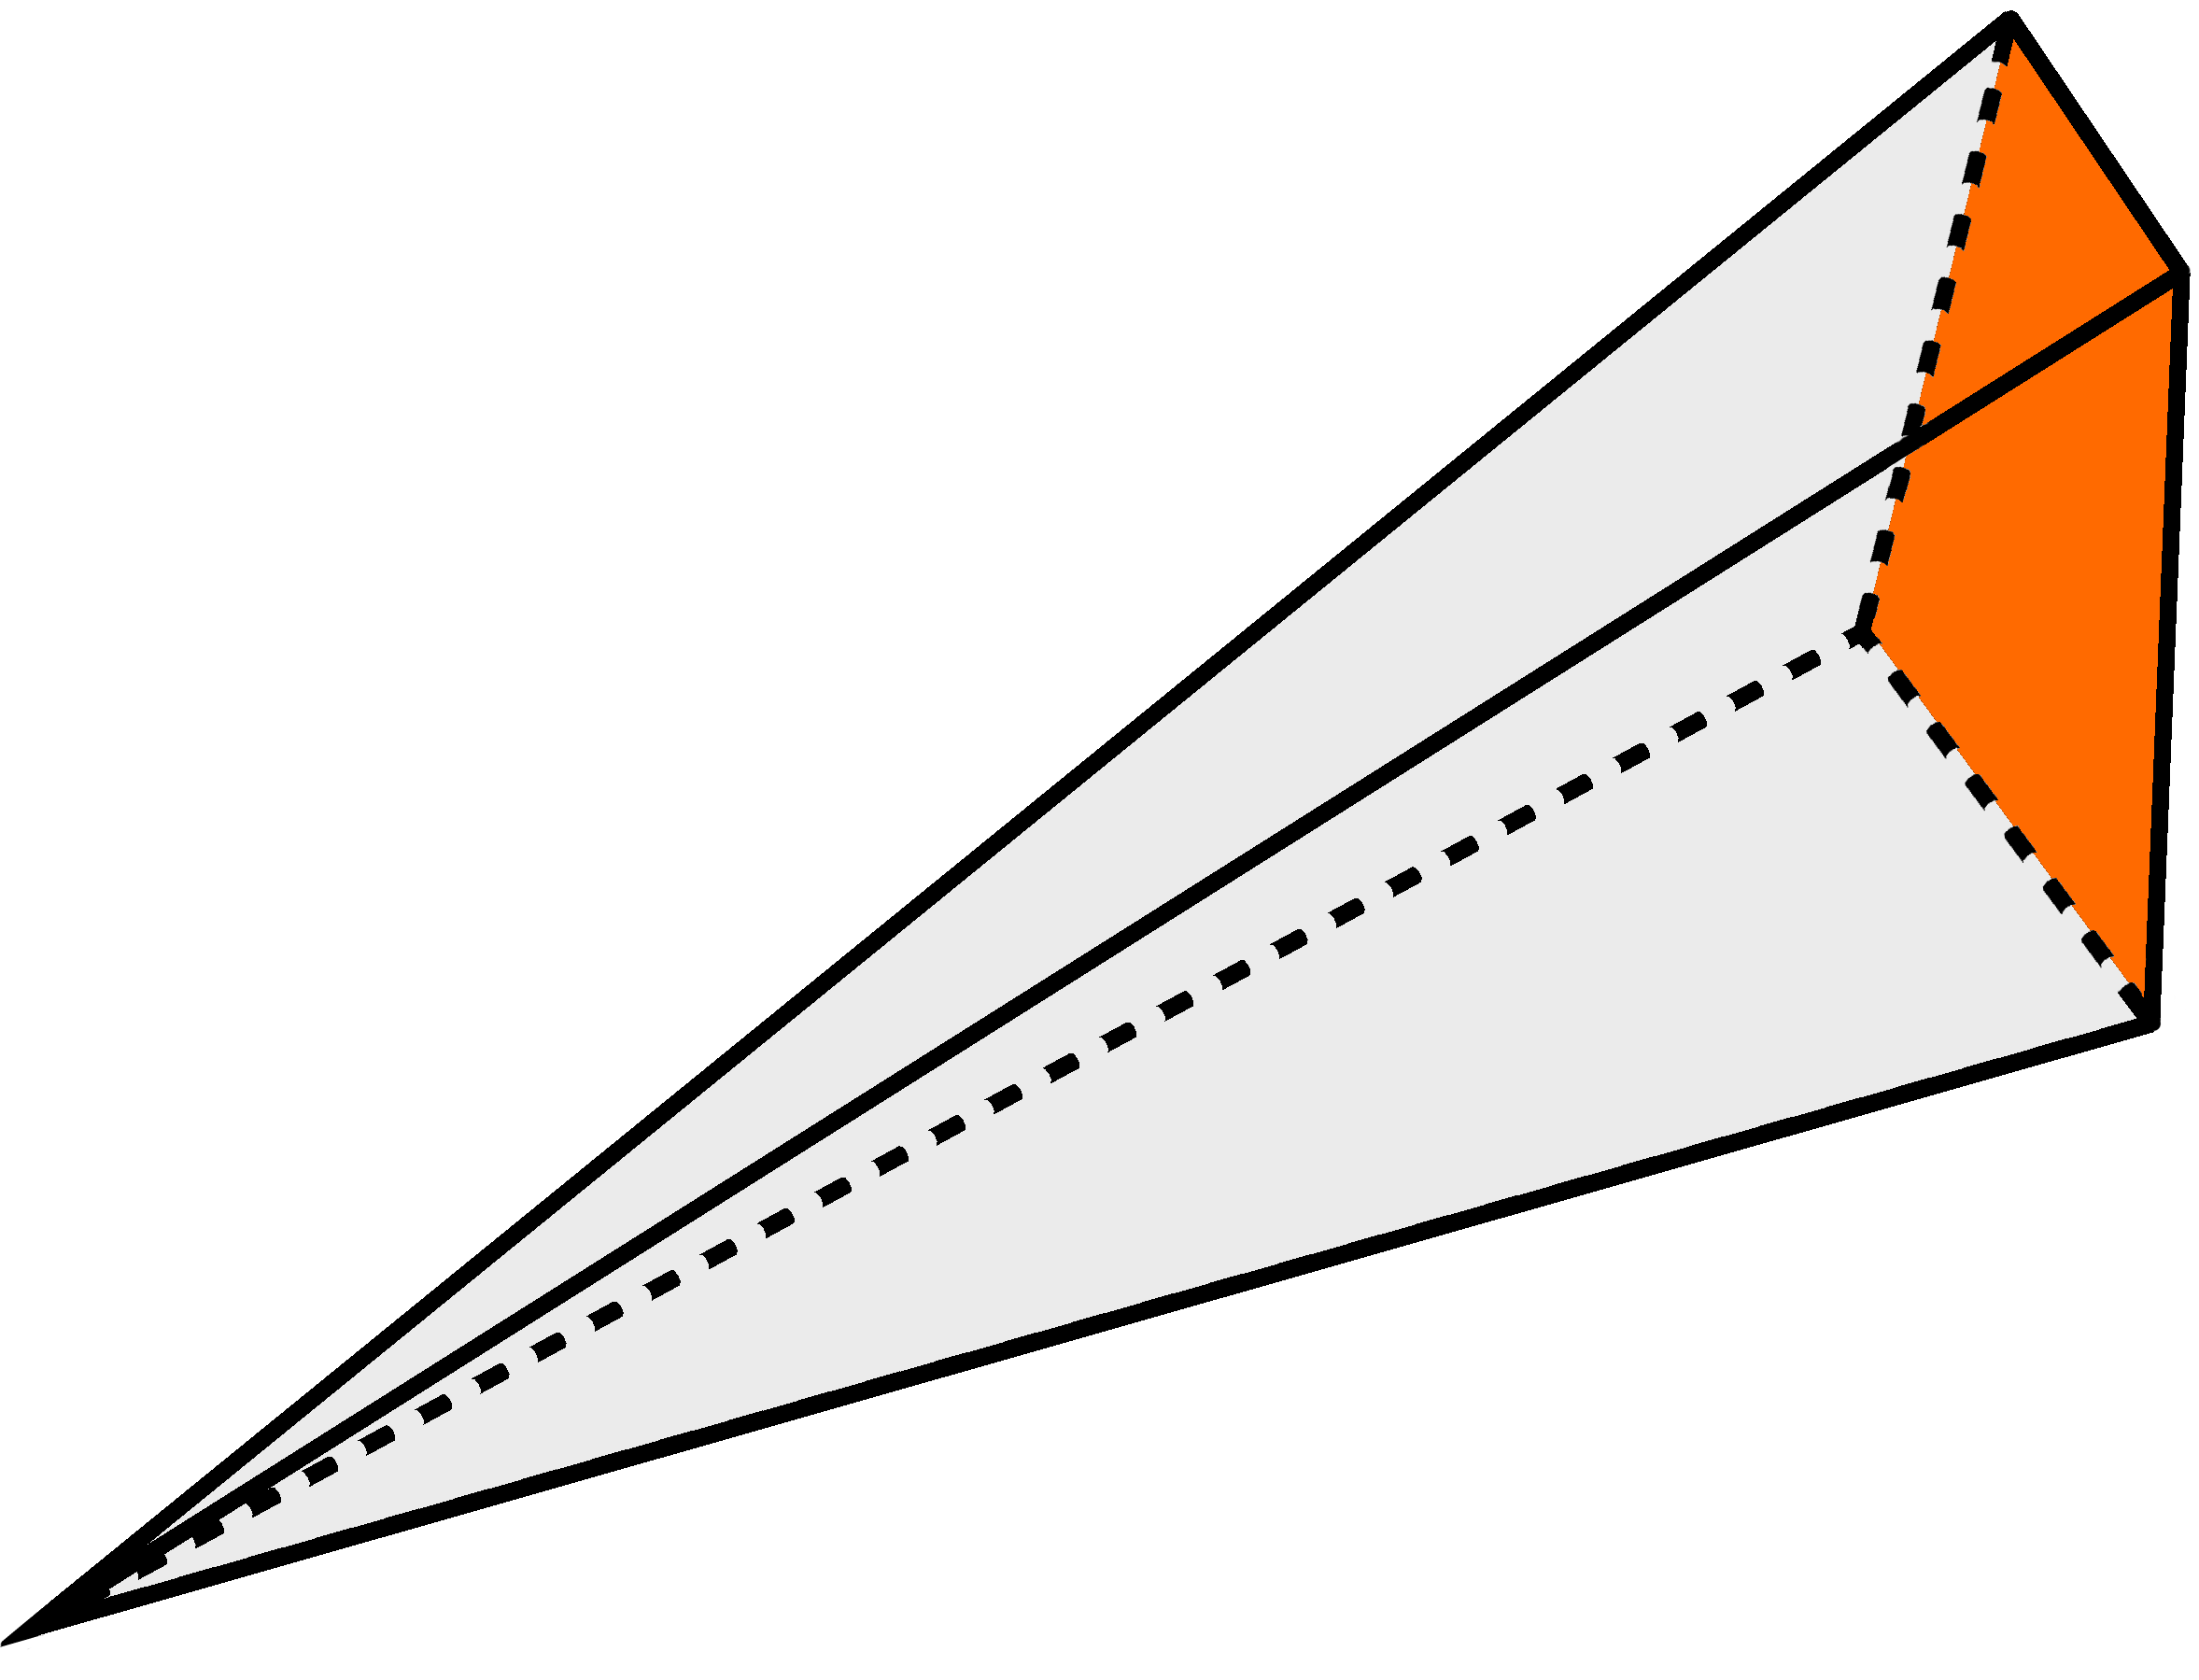 piramide-quadrangolare-obliqua-2-base-evidenziata.p